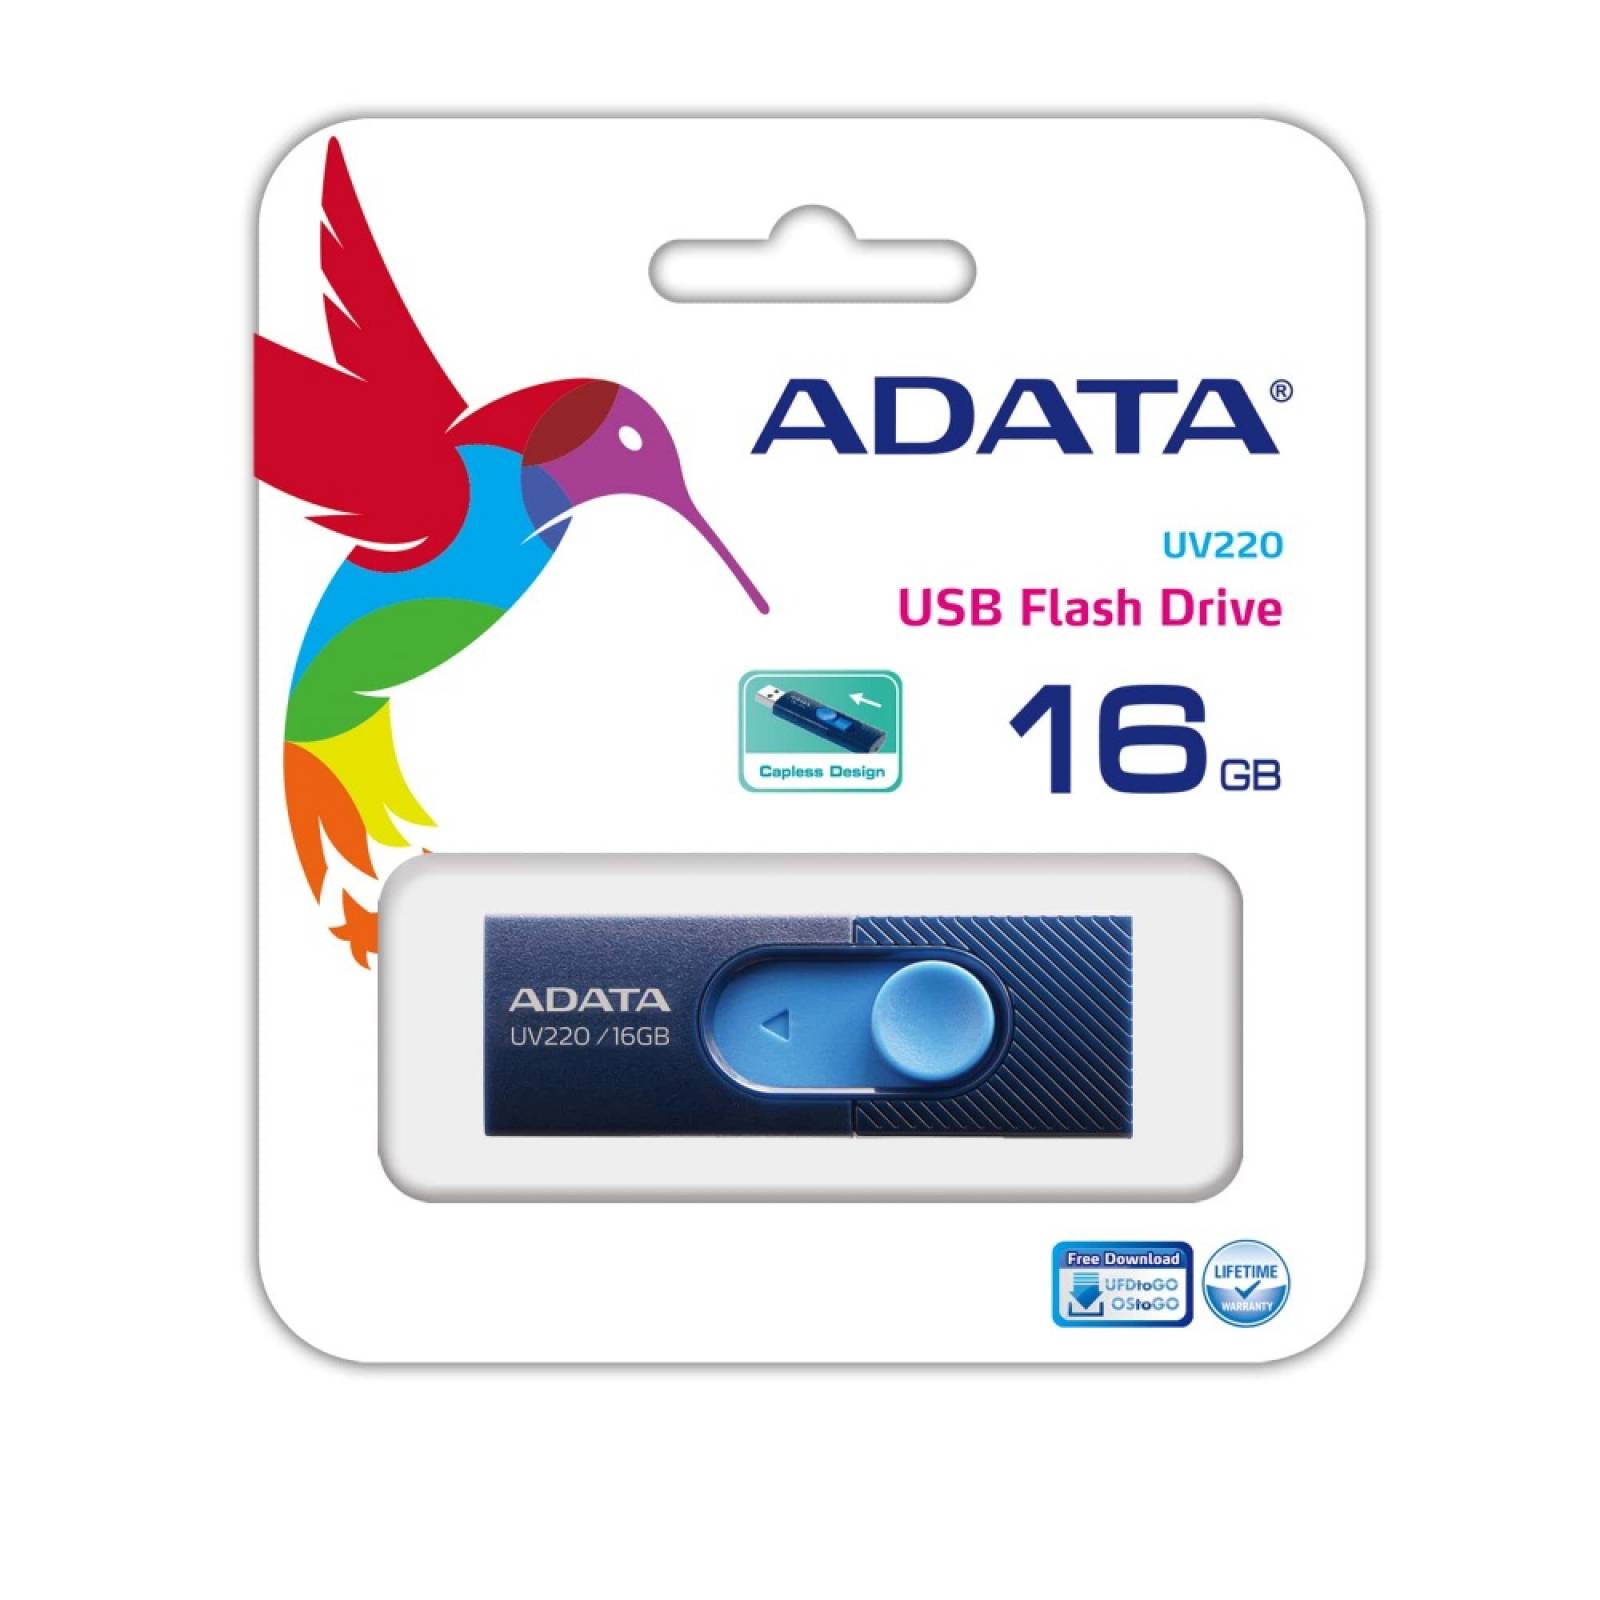 Memoria USB 2.0 Adata UV220 16GB Azul Marino/Azul